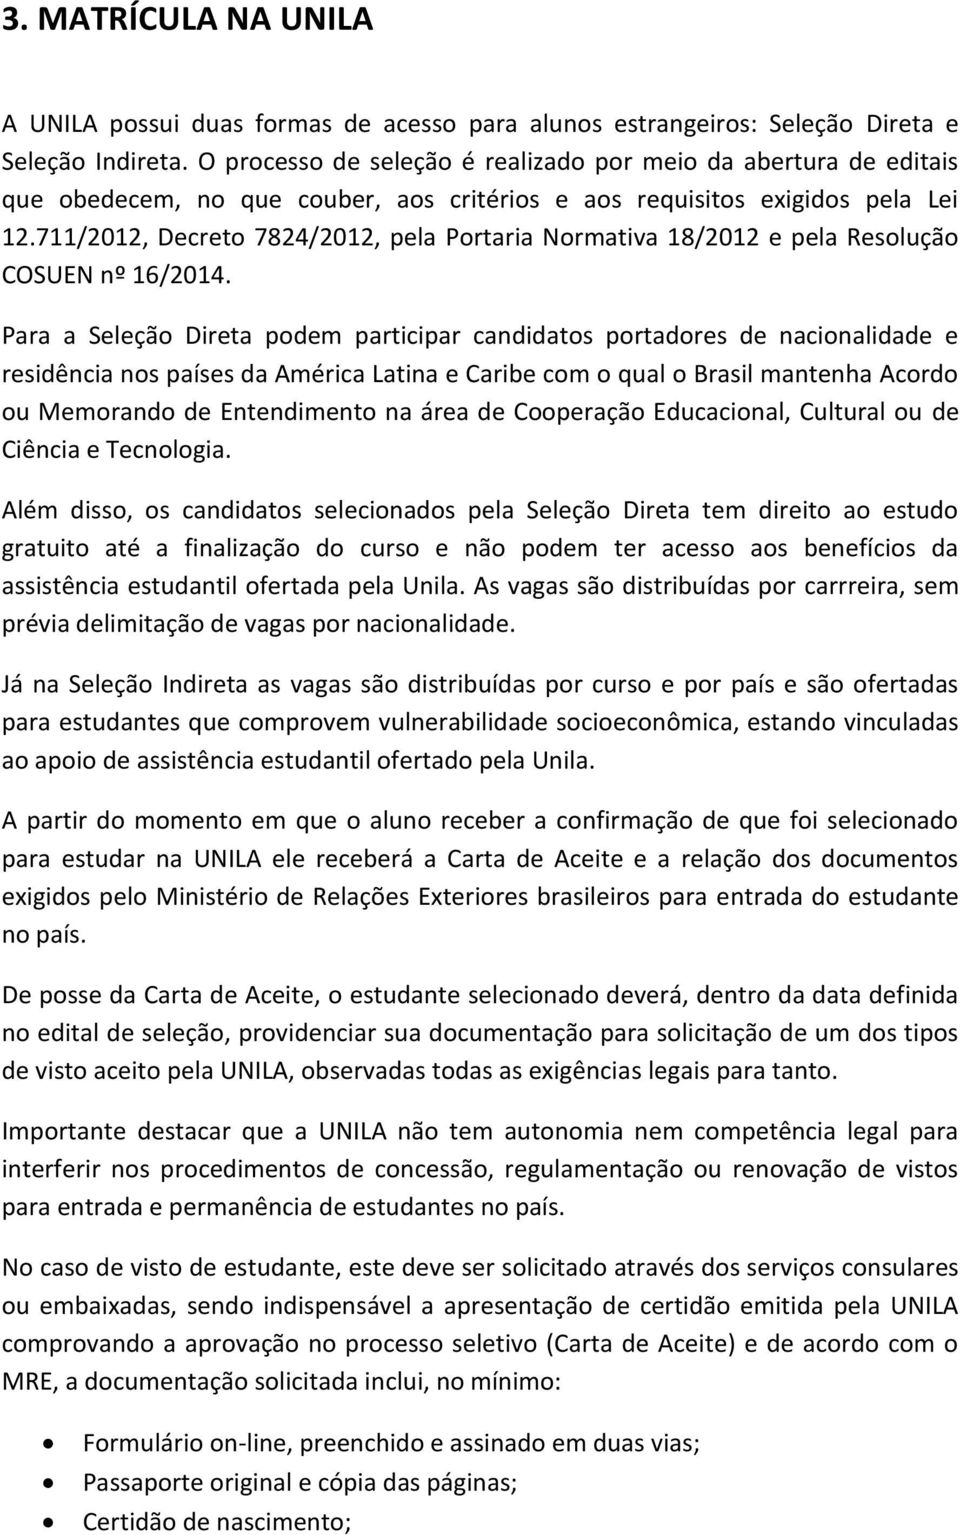 711/2012, Decreto 7824/2012, pela Portaria Normativa 18/2012 e pela Resolução COSUEN nº 16/2014.